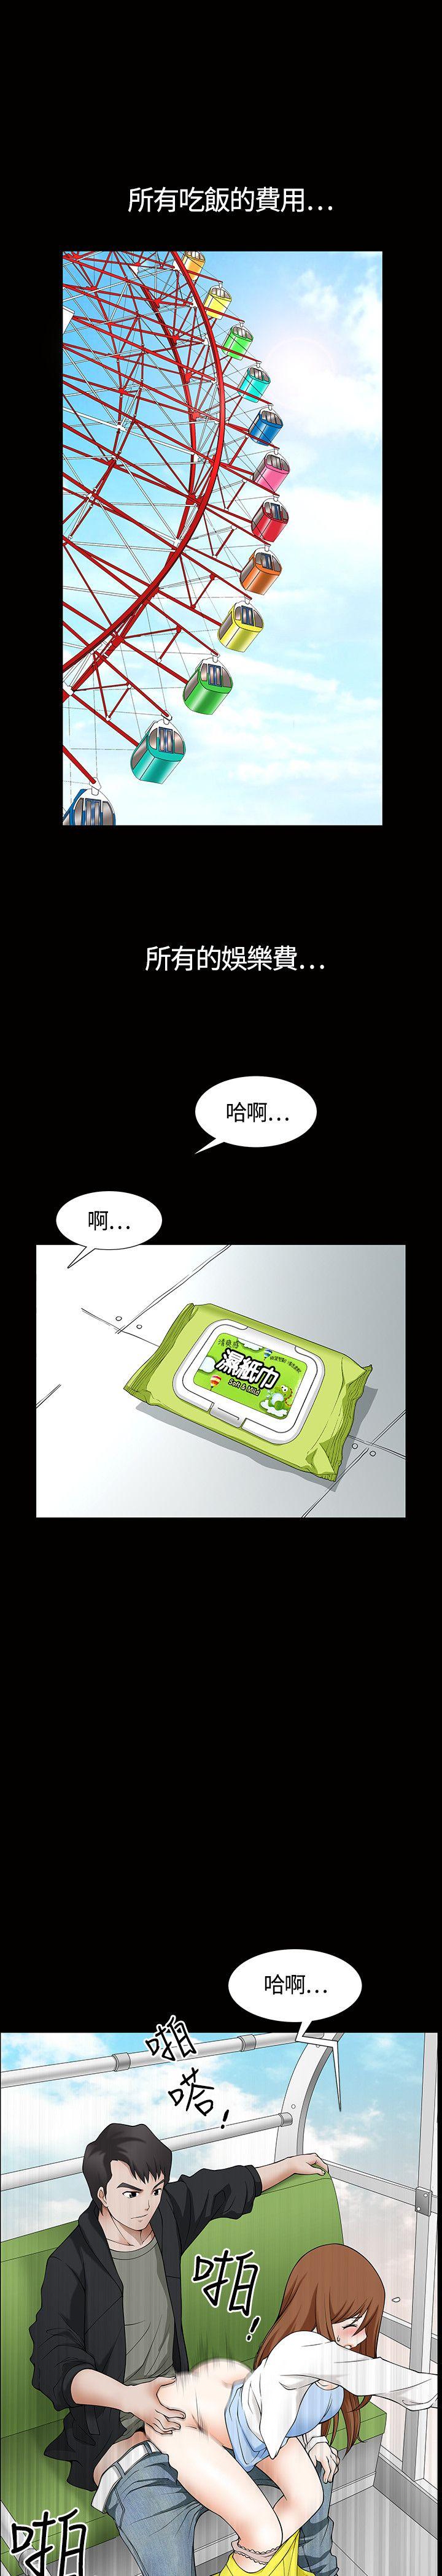 韩国污漫画 人妻性解放3:粗糙的手 第3话 8